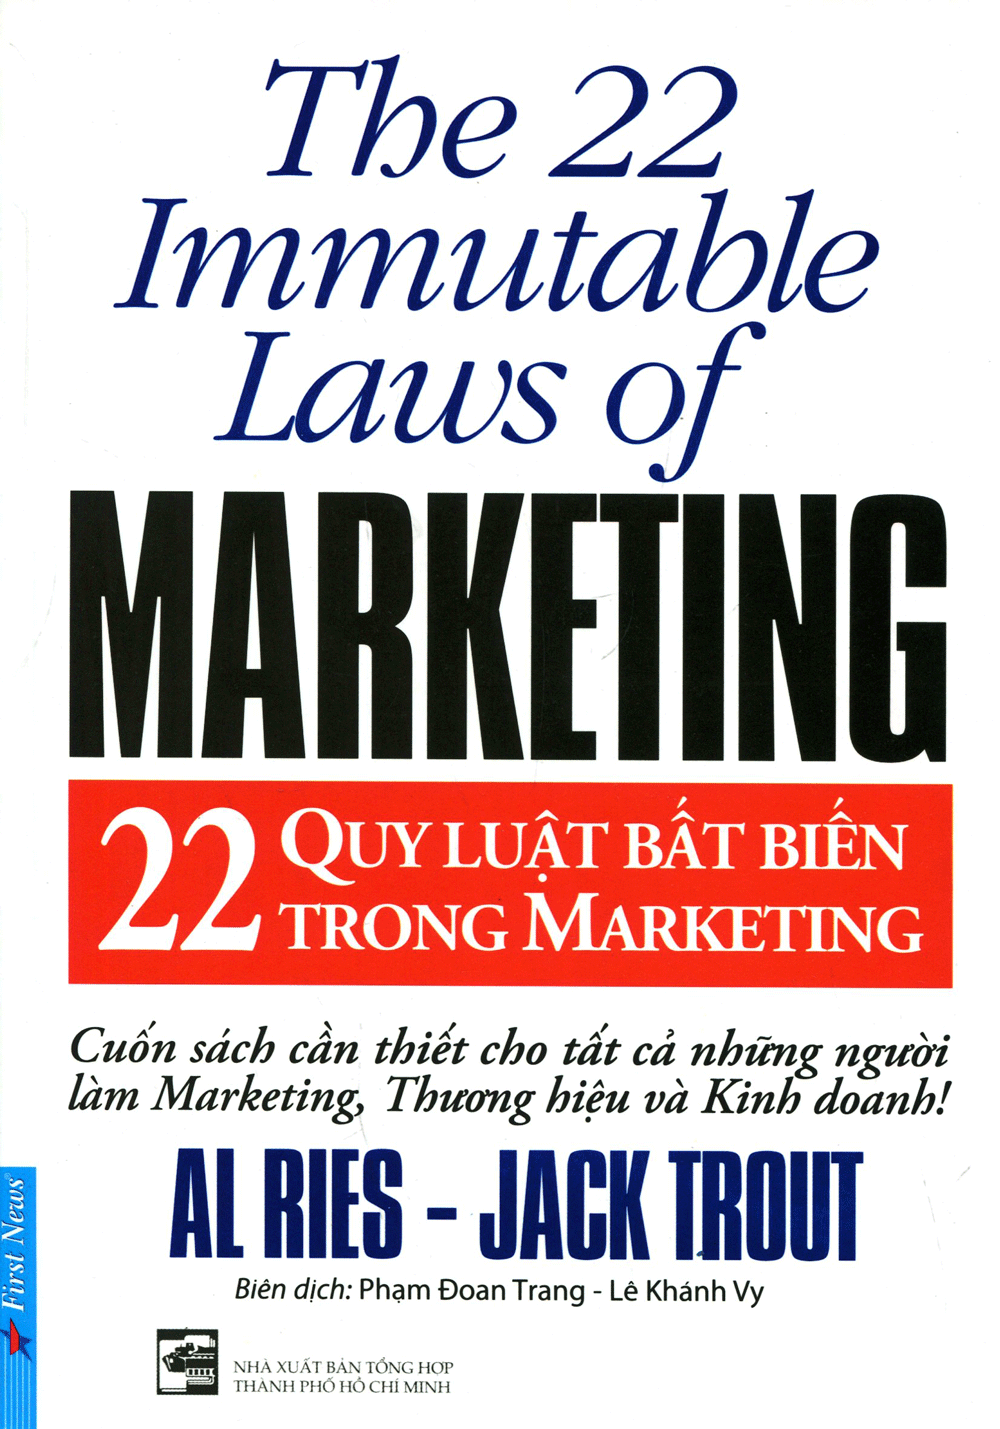 sach 22 quy luat bat bien trong marketing 12 quyển sách hay về marketing giúp bạn mở khóa sáng tạo